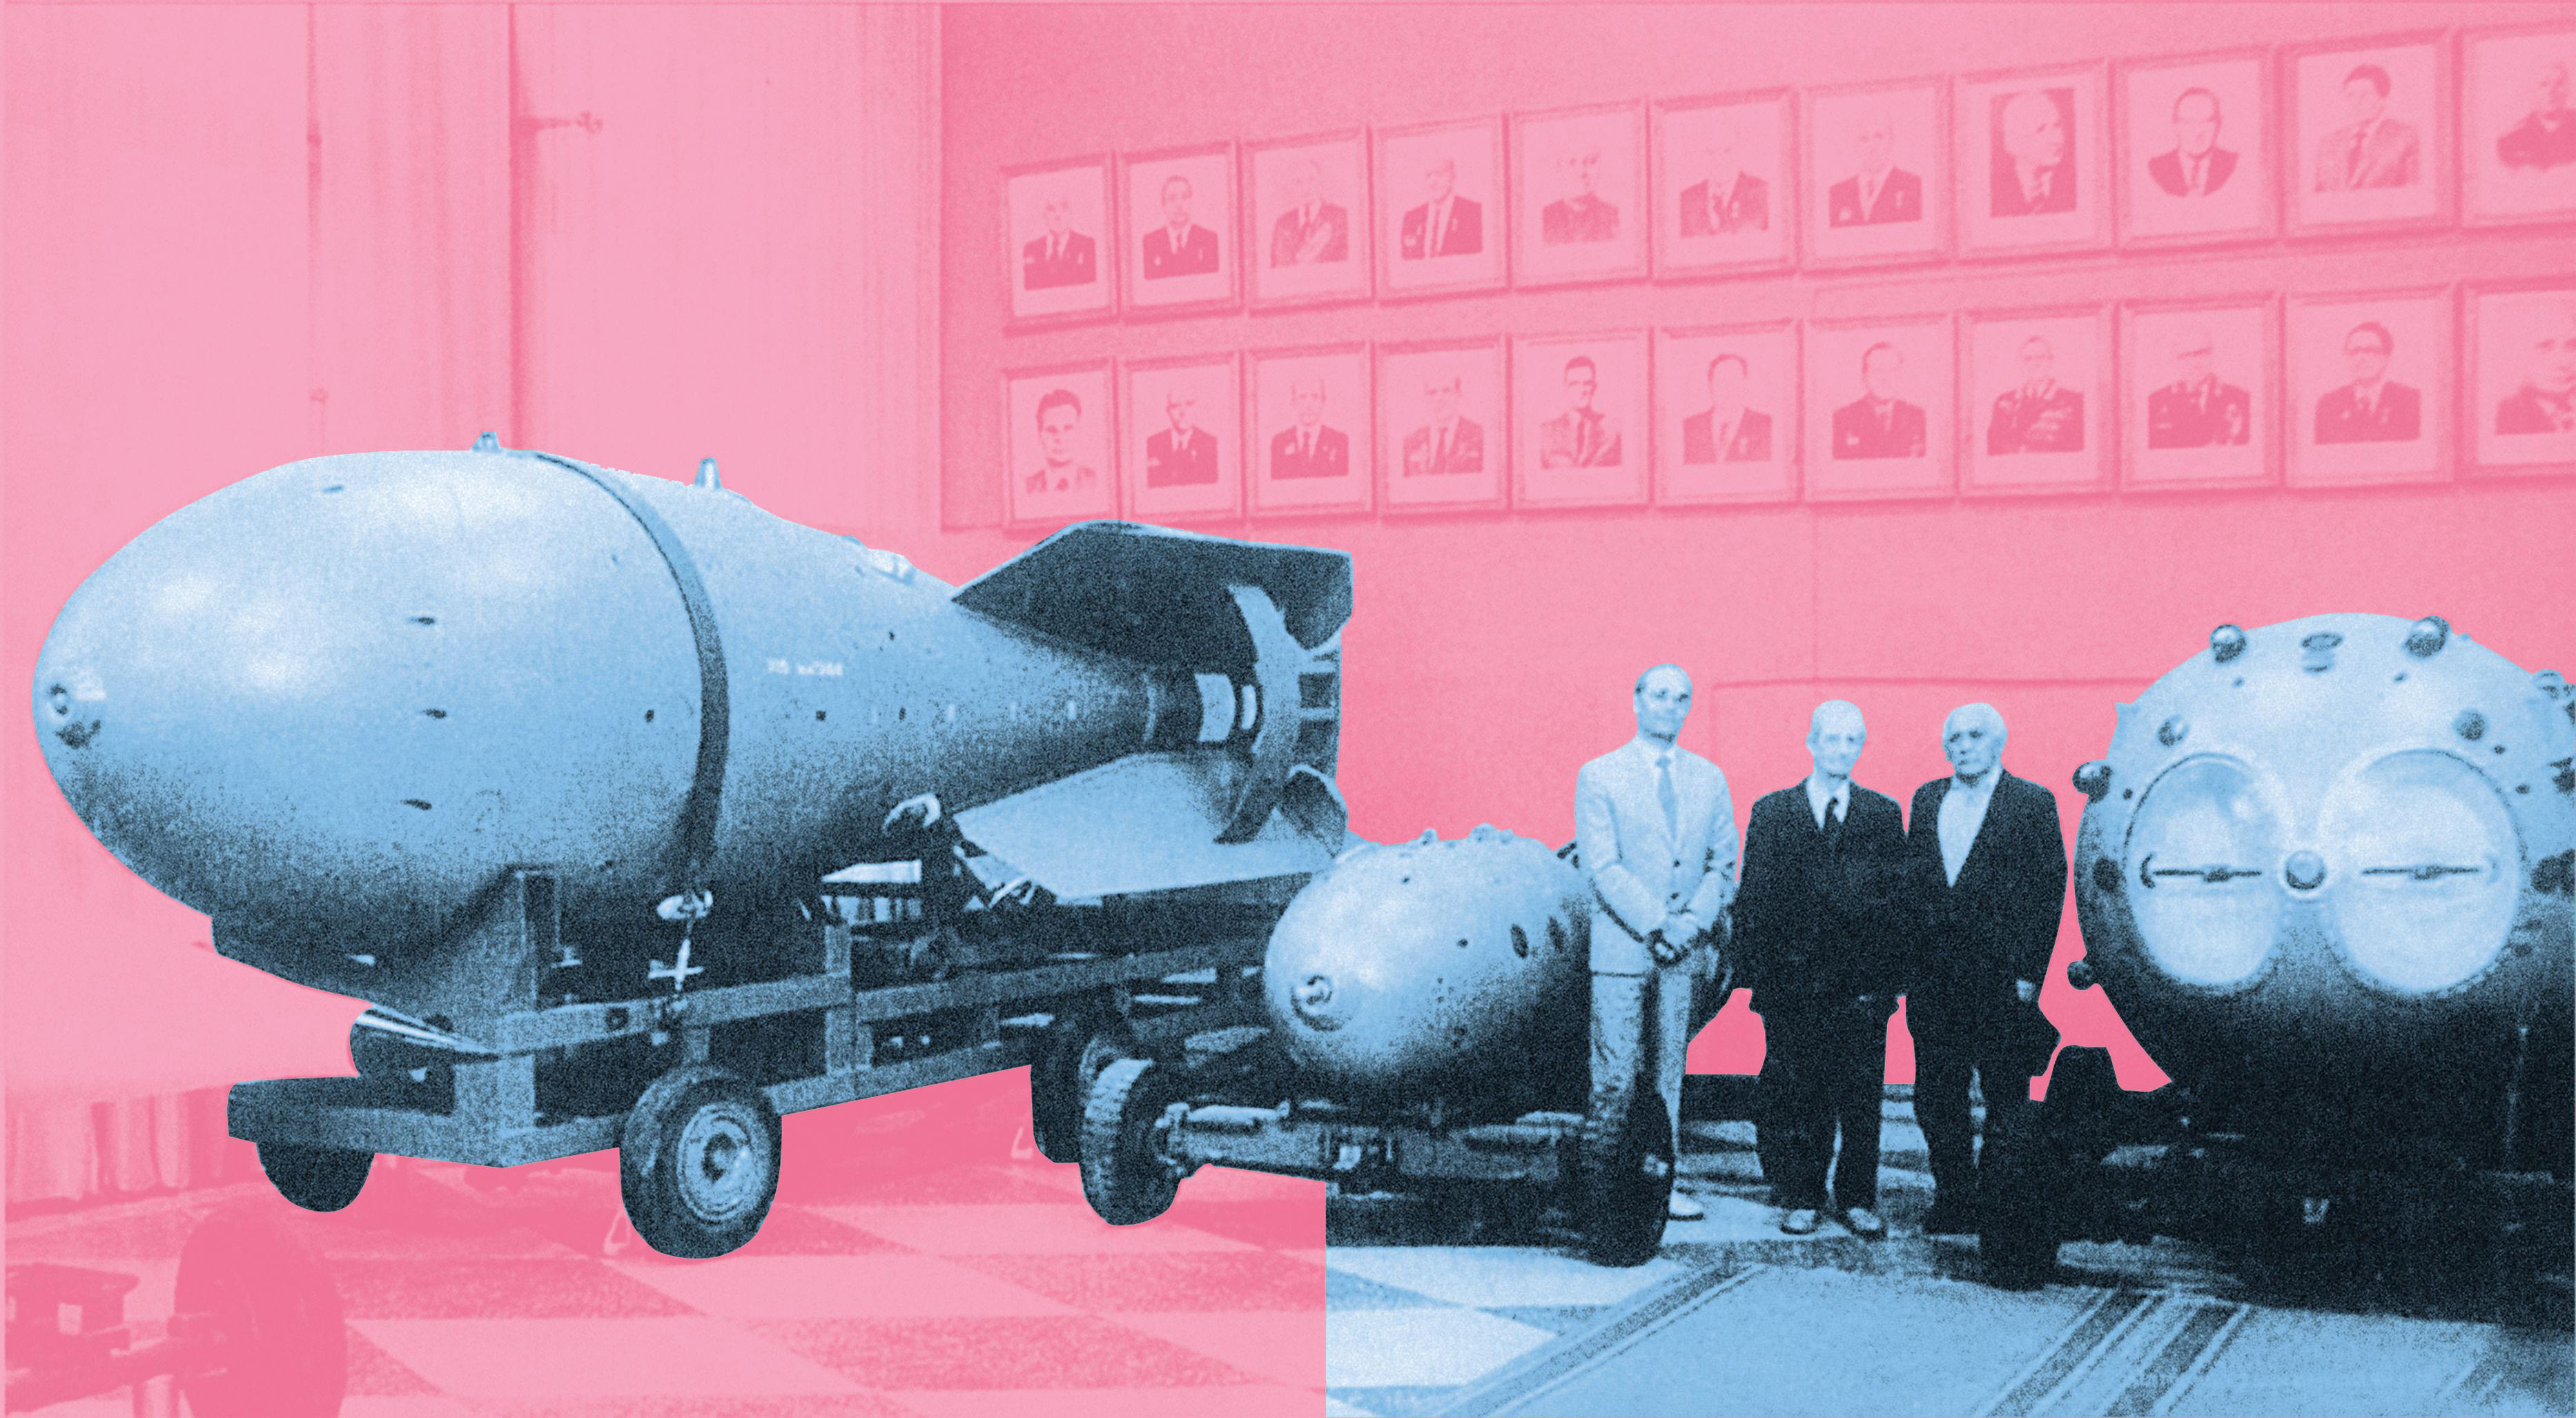 Модели бомб РДС-6с и РДС-1. Ю. Н. Смирнов, Ю. Б. Харитон, В. Б. Адамский. Музей ядерного оружия. Саратов, 1993 г.